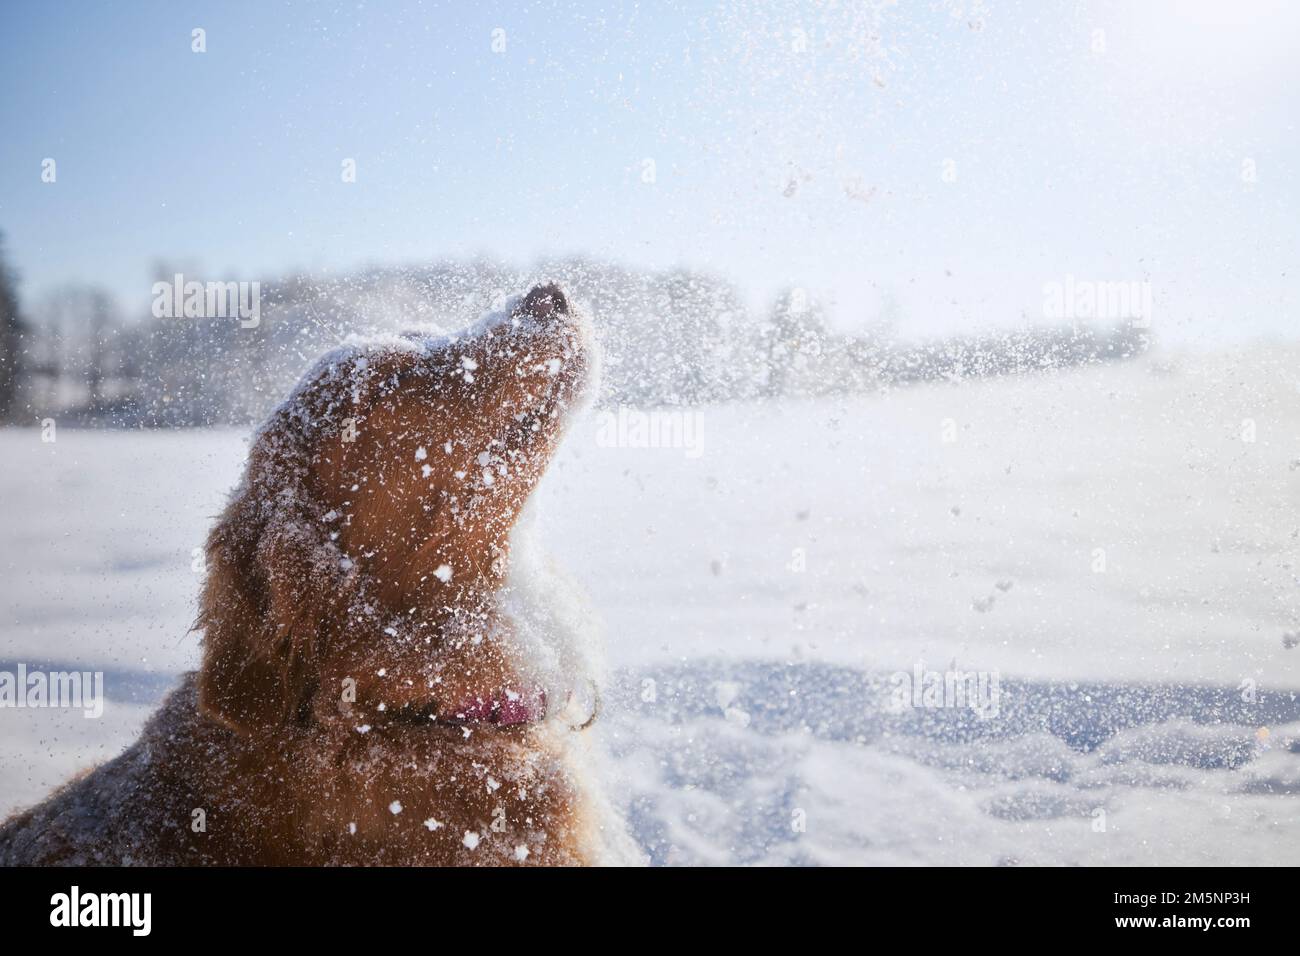 Joyeux chien en train de profiter de la neige poudreuse fraîche. Retriever de canard de la Nouvelle-Écosse dans un paysage enneigé. Banque D'Images